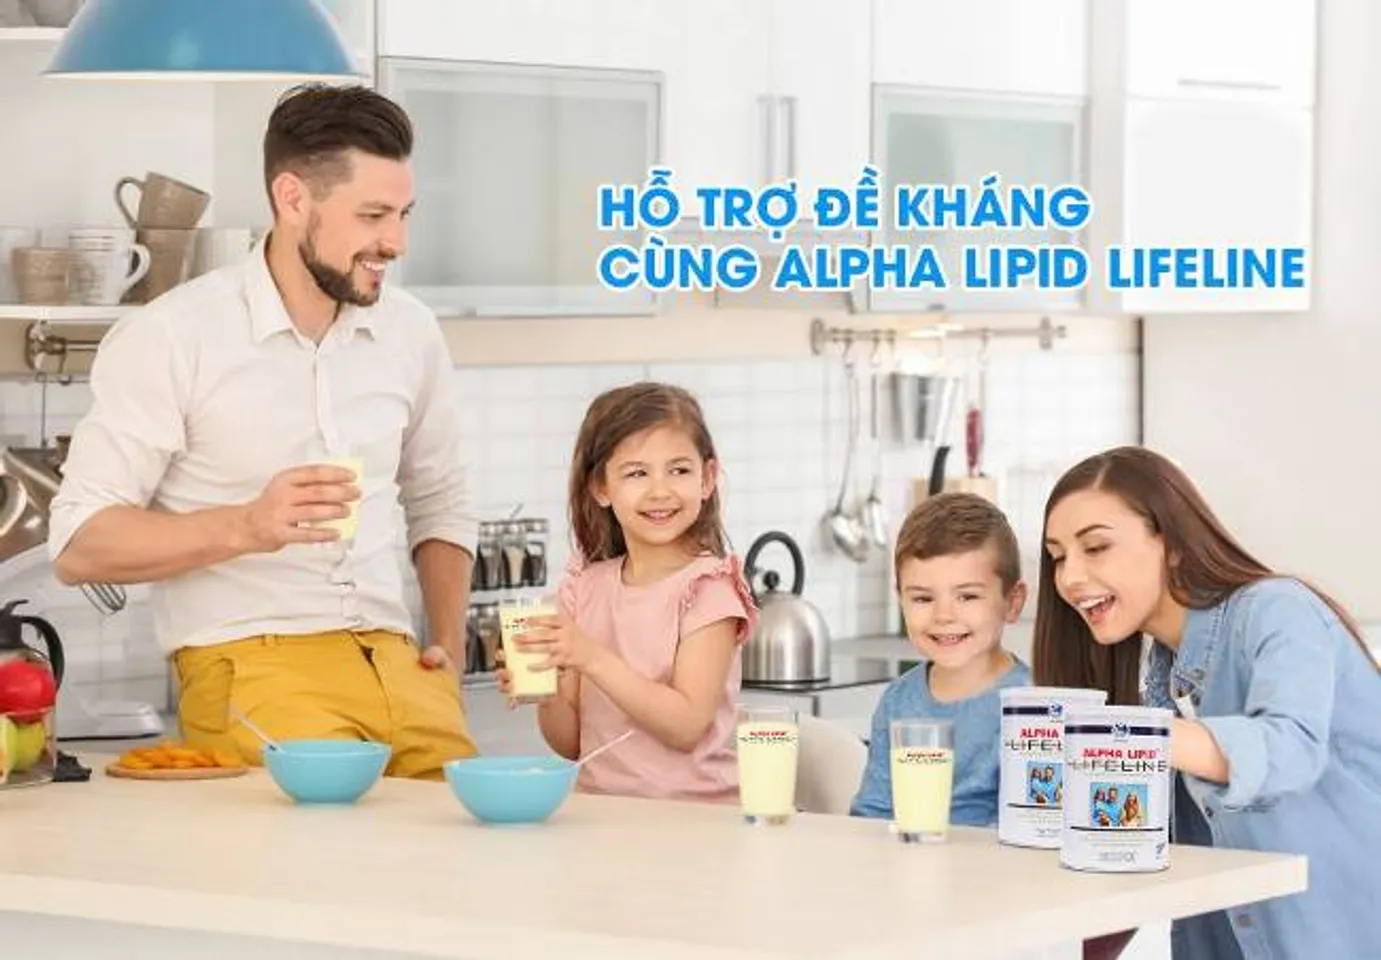 Sữa non Alpha Lipid Lifeline dành riêng cho tất cả gia đình